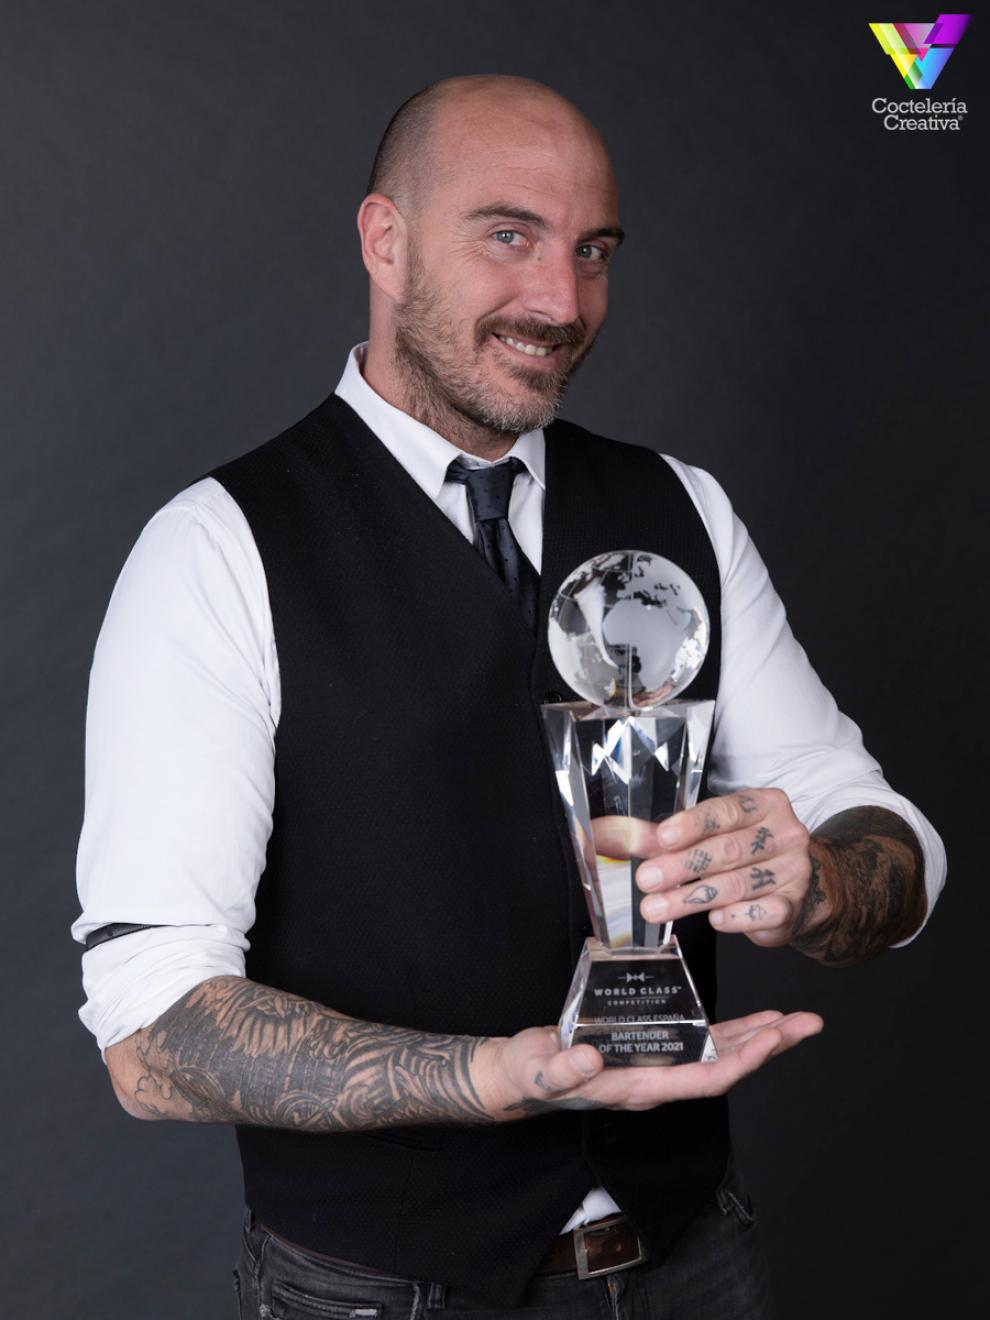 imagen Luis Inchaurraga con el premio Mejor Bartender de España 2021